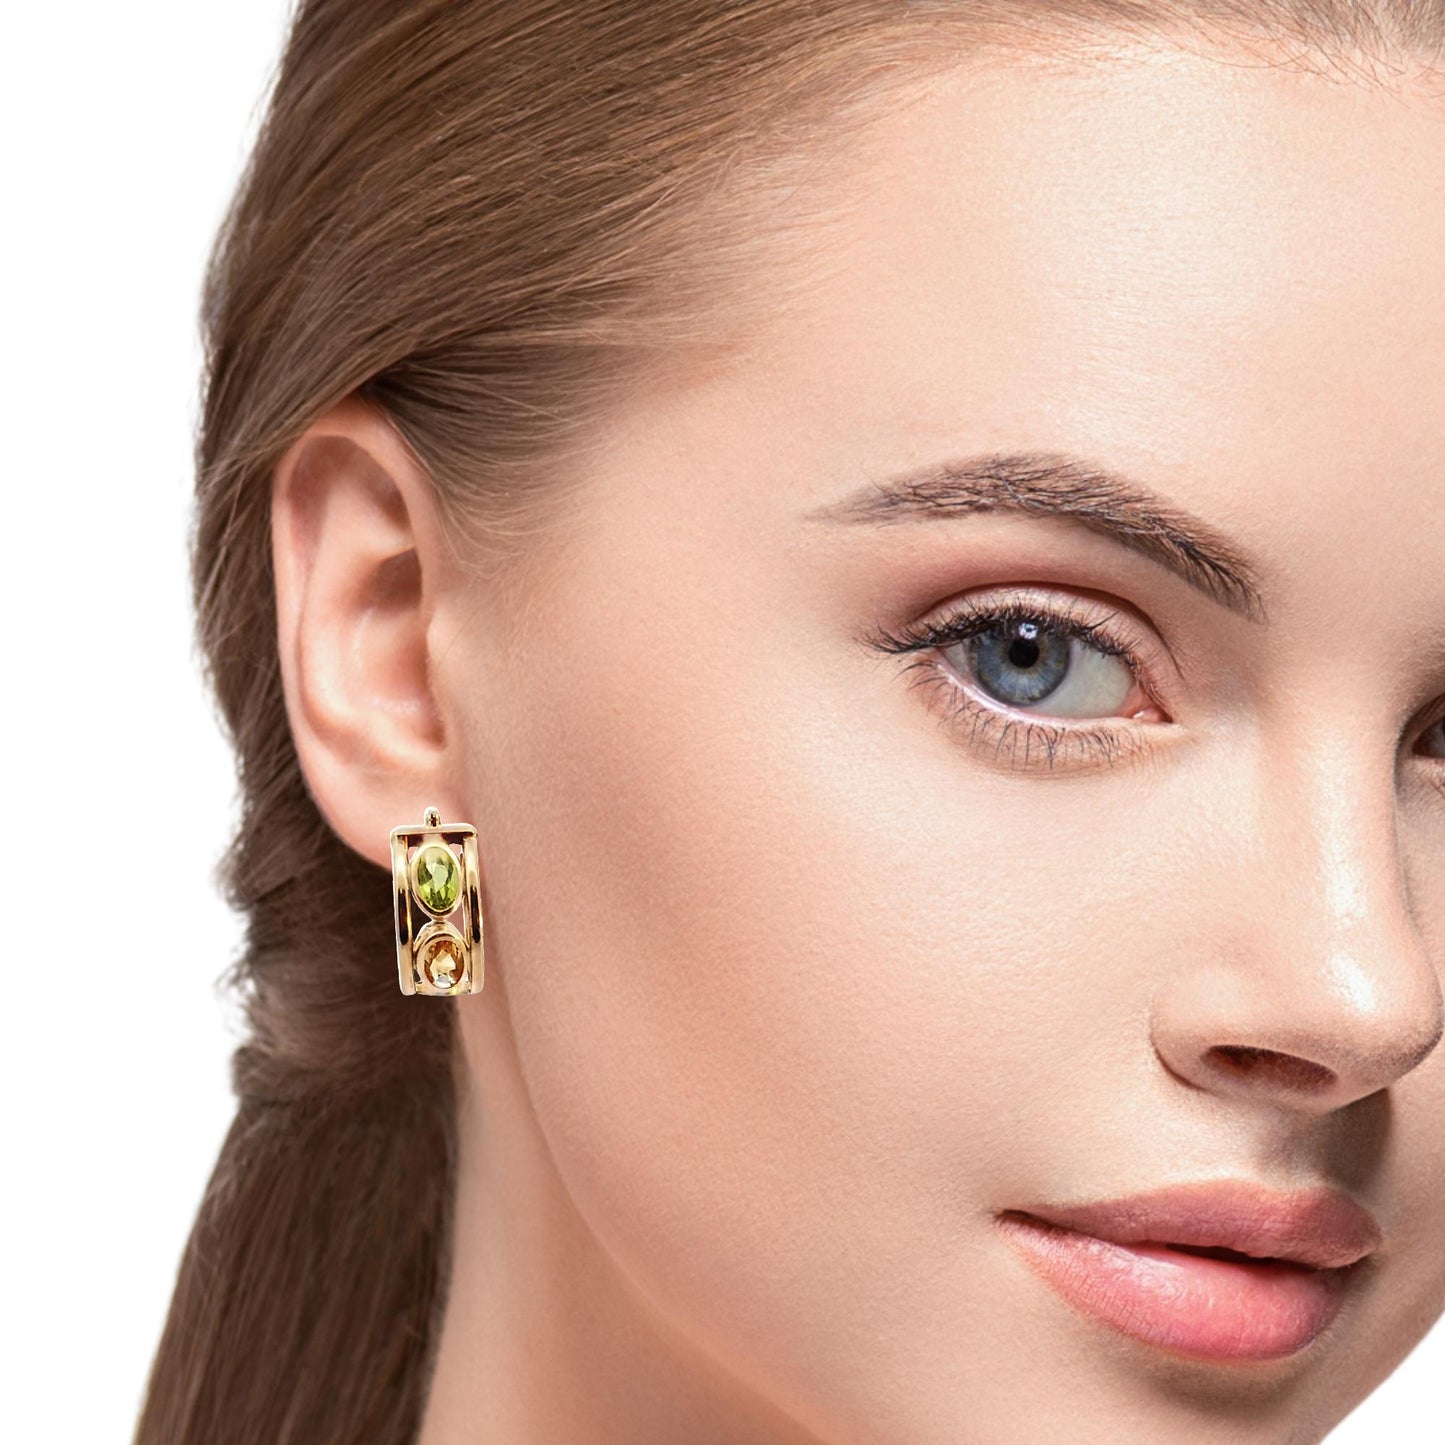 14K Yellow Gold Cute Multi-Color Hoop Earrings